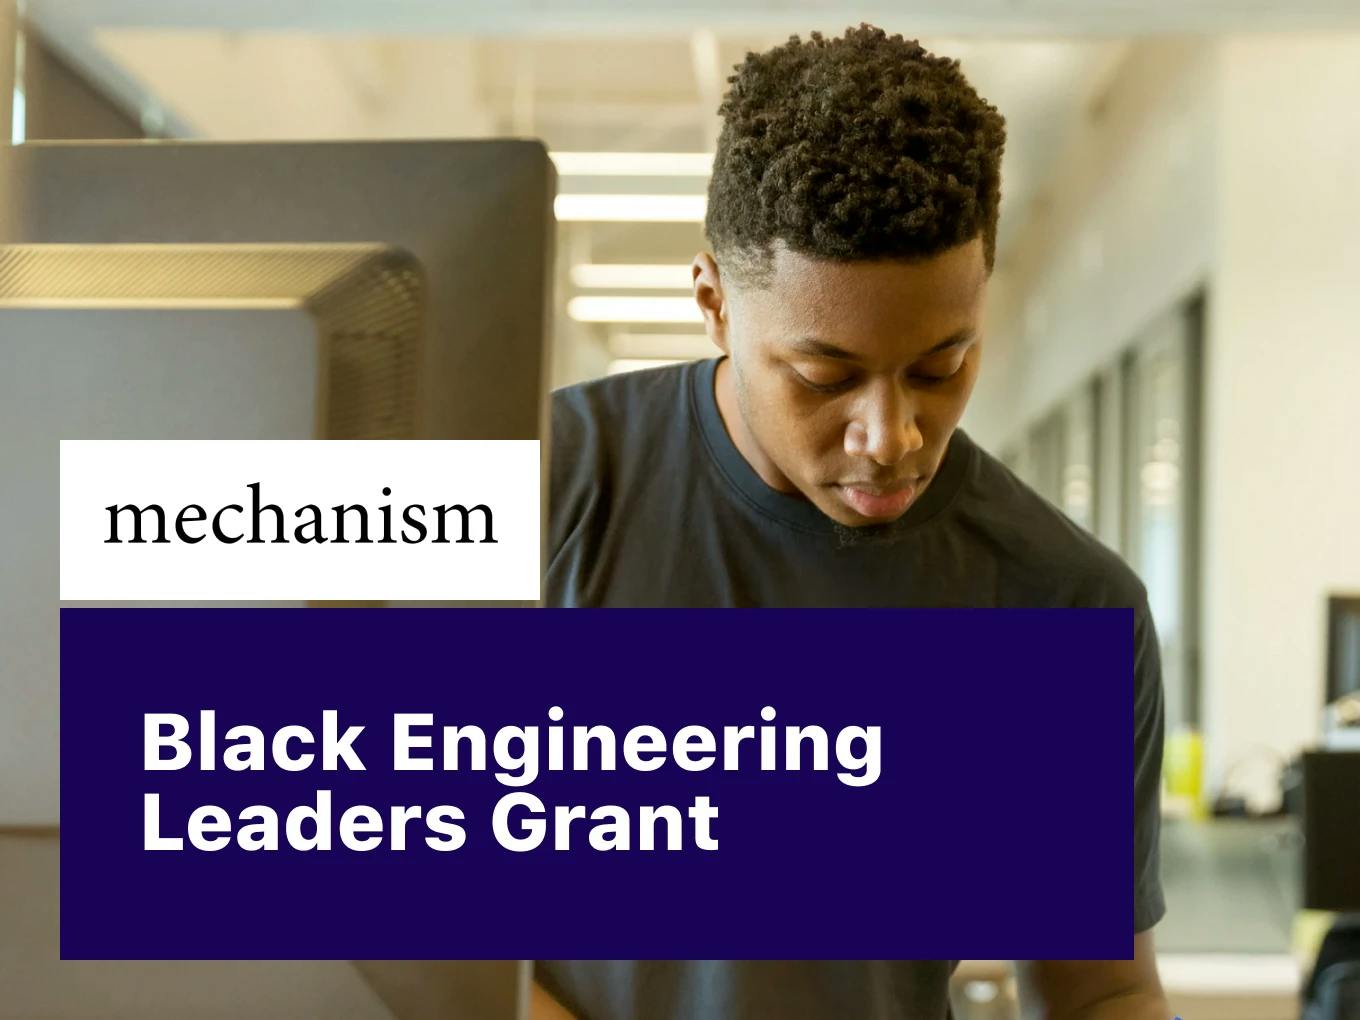 Black Engineering Leaders Grant